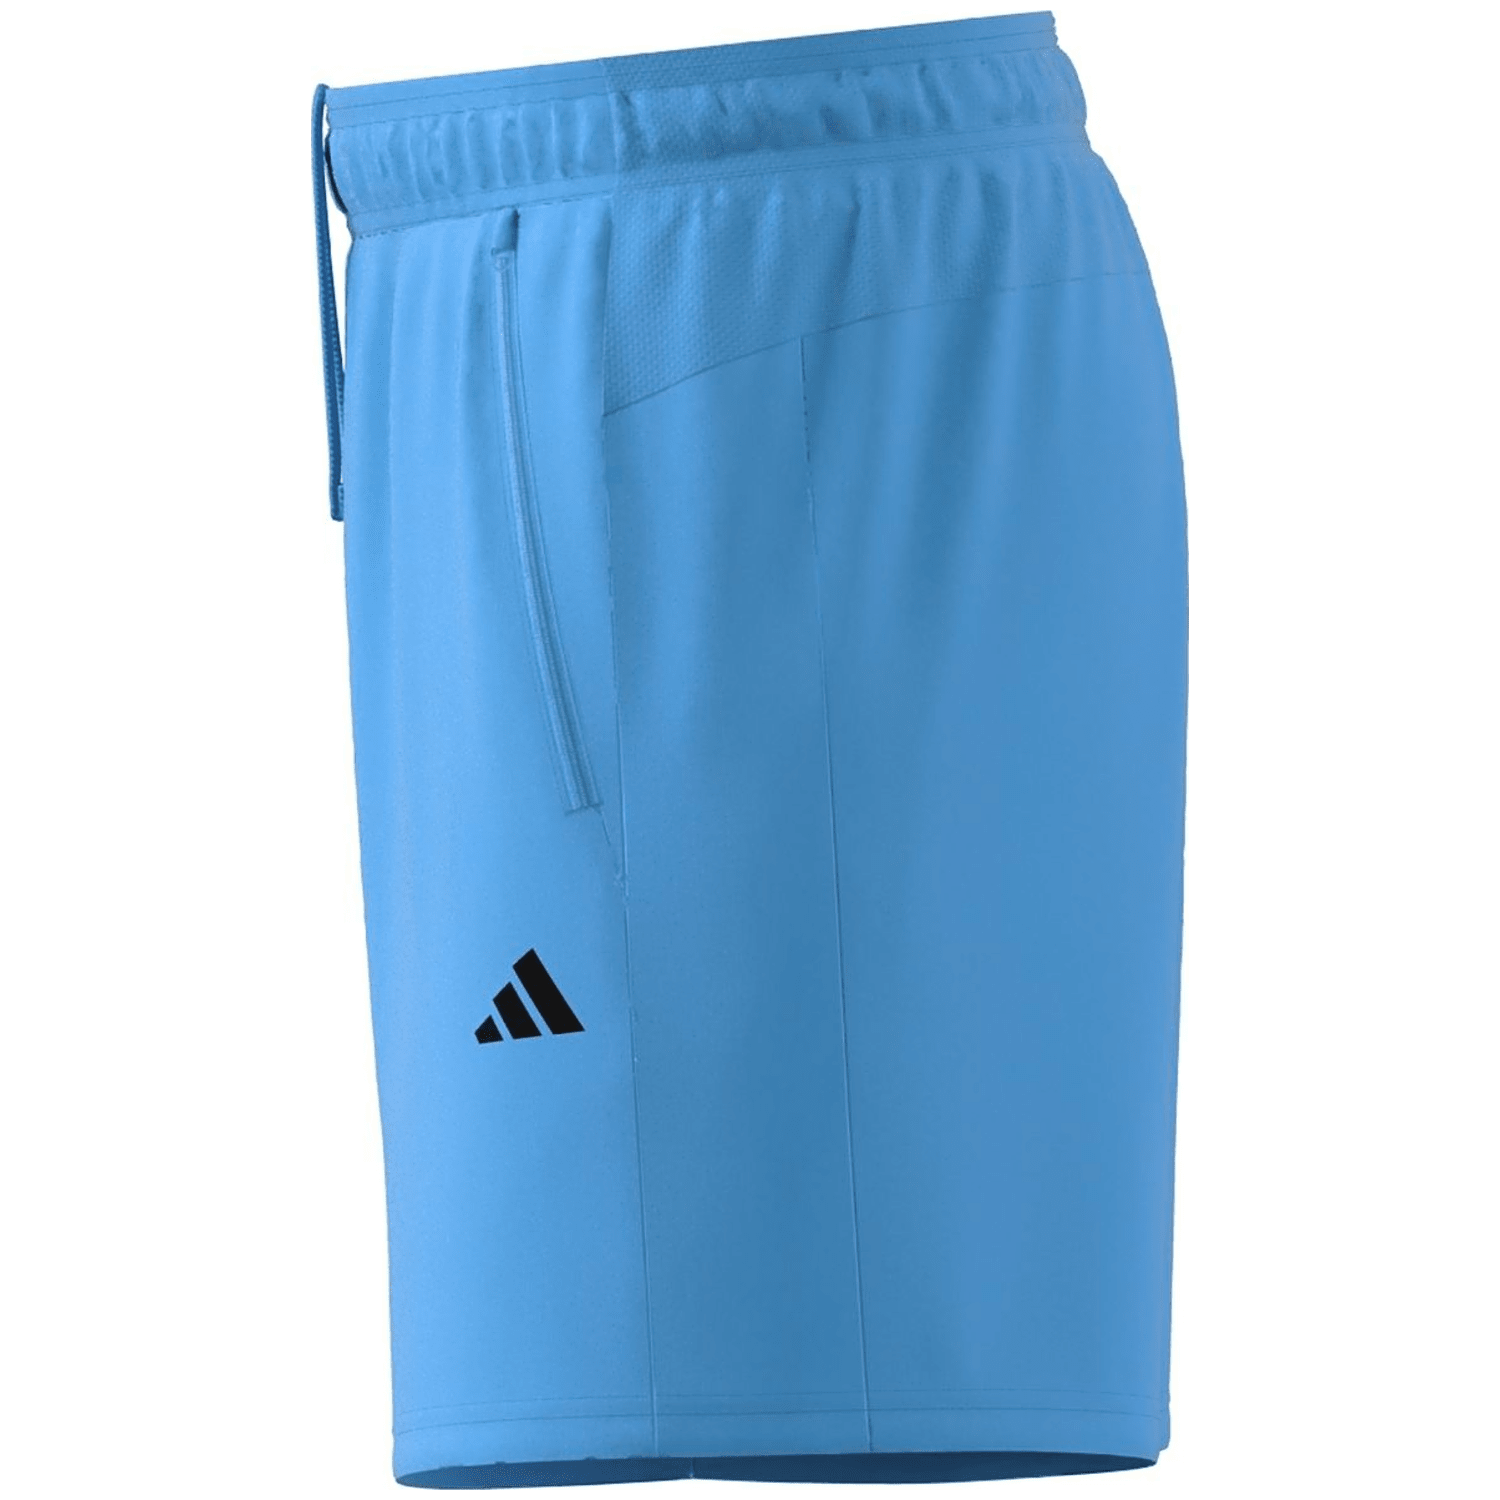 Adidas Train Essentials Woven Training Shorts 7inch Herren